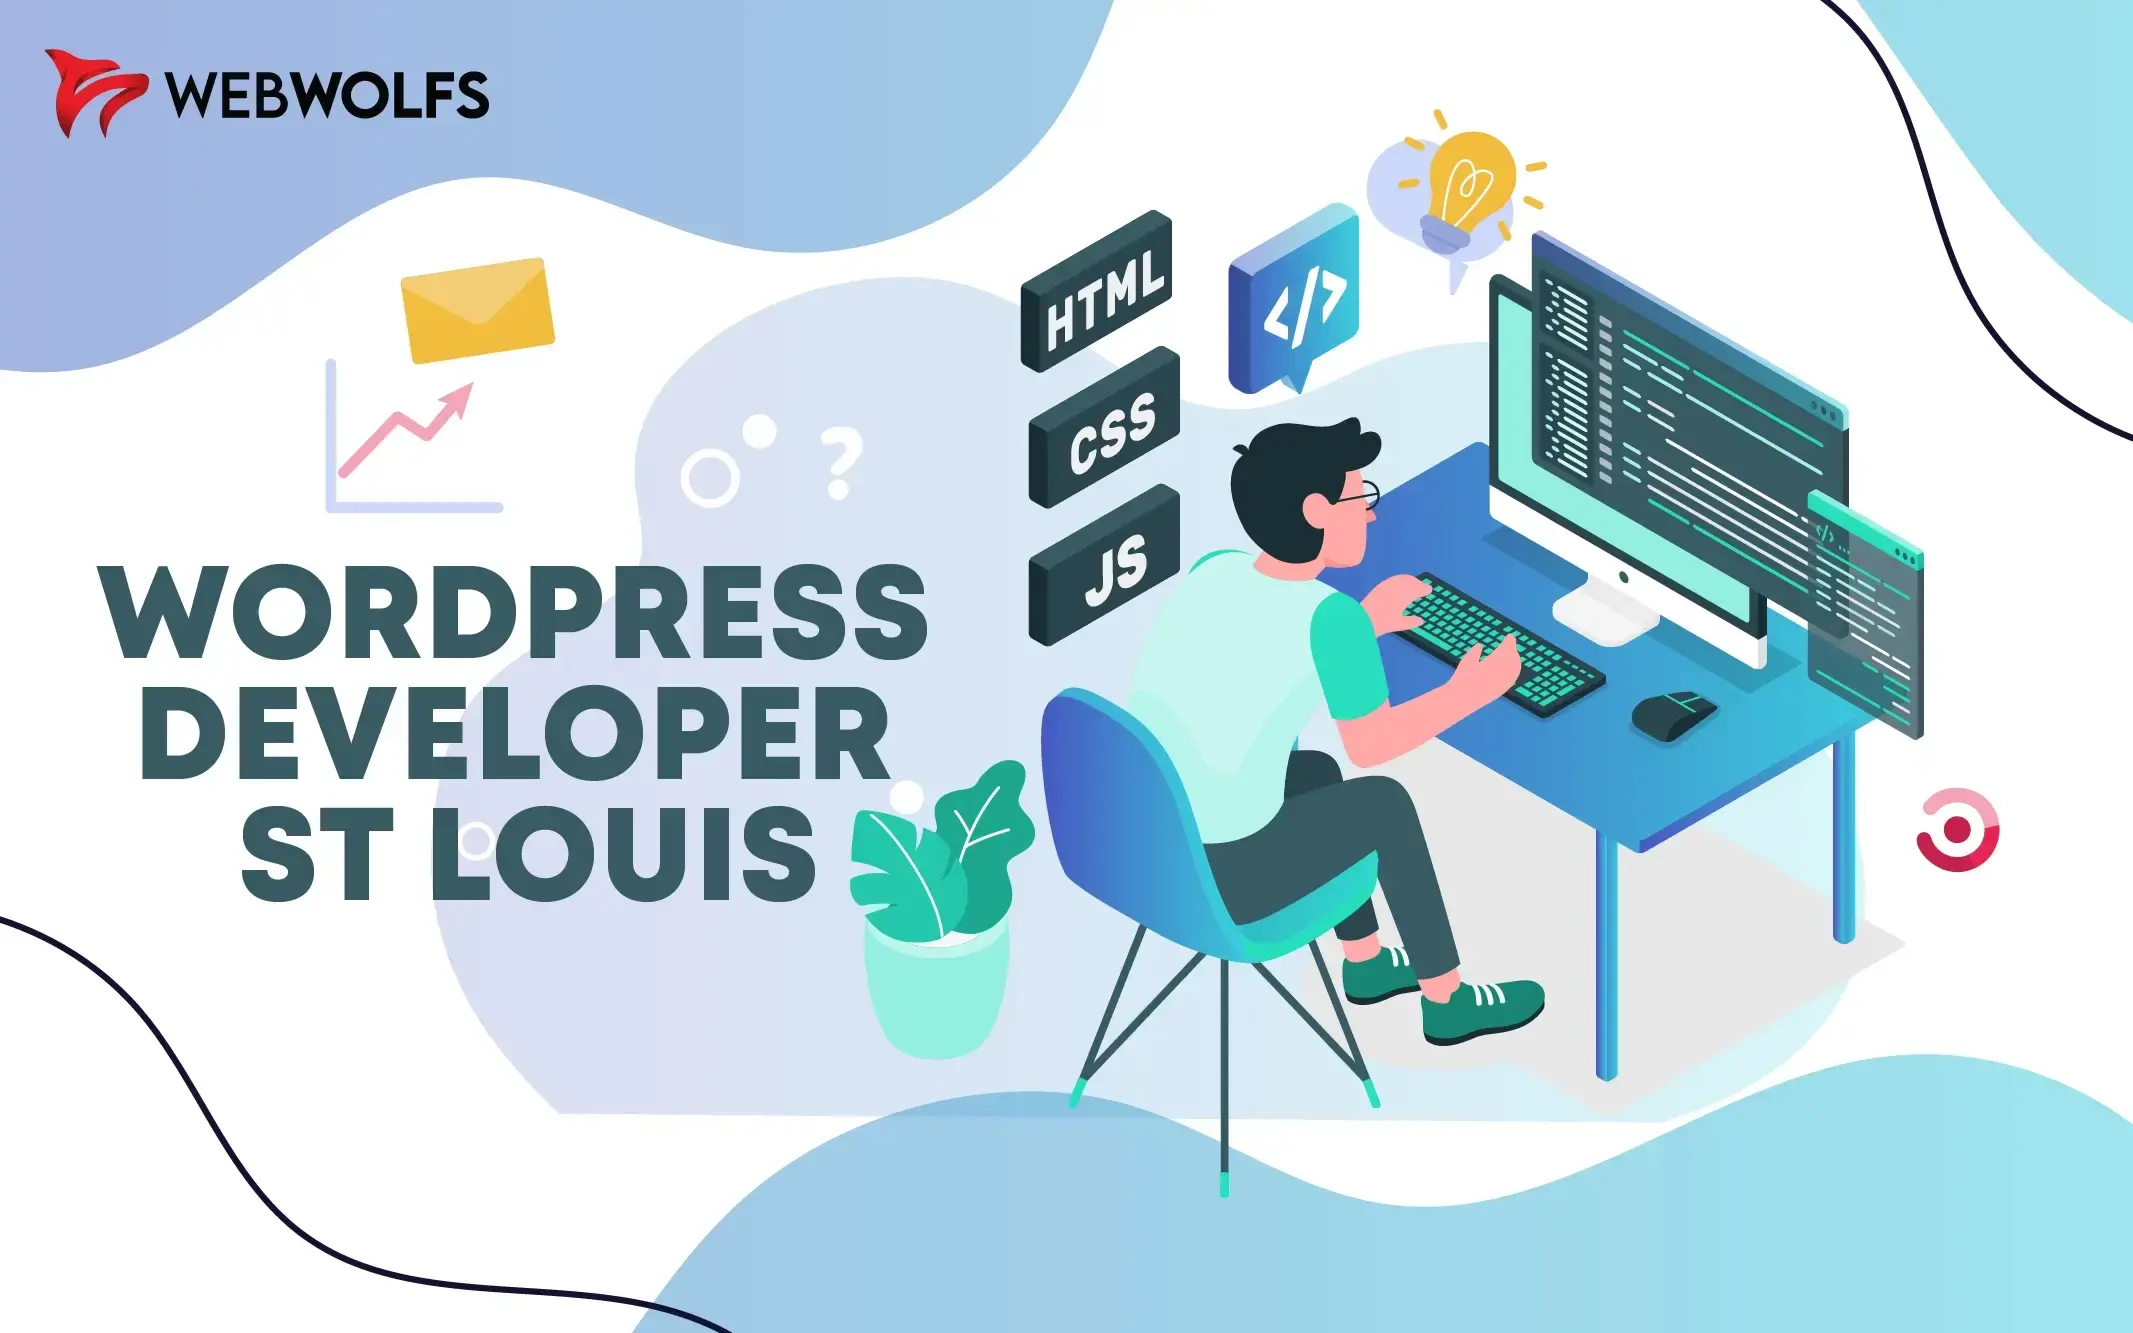 Optimizing Website Performance: Tips for WordPress Developer ST Louis